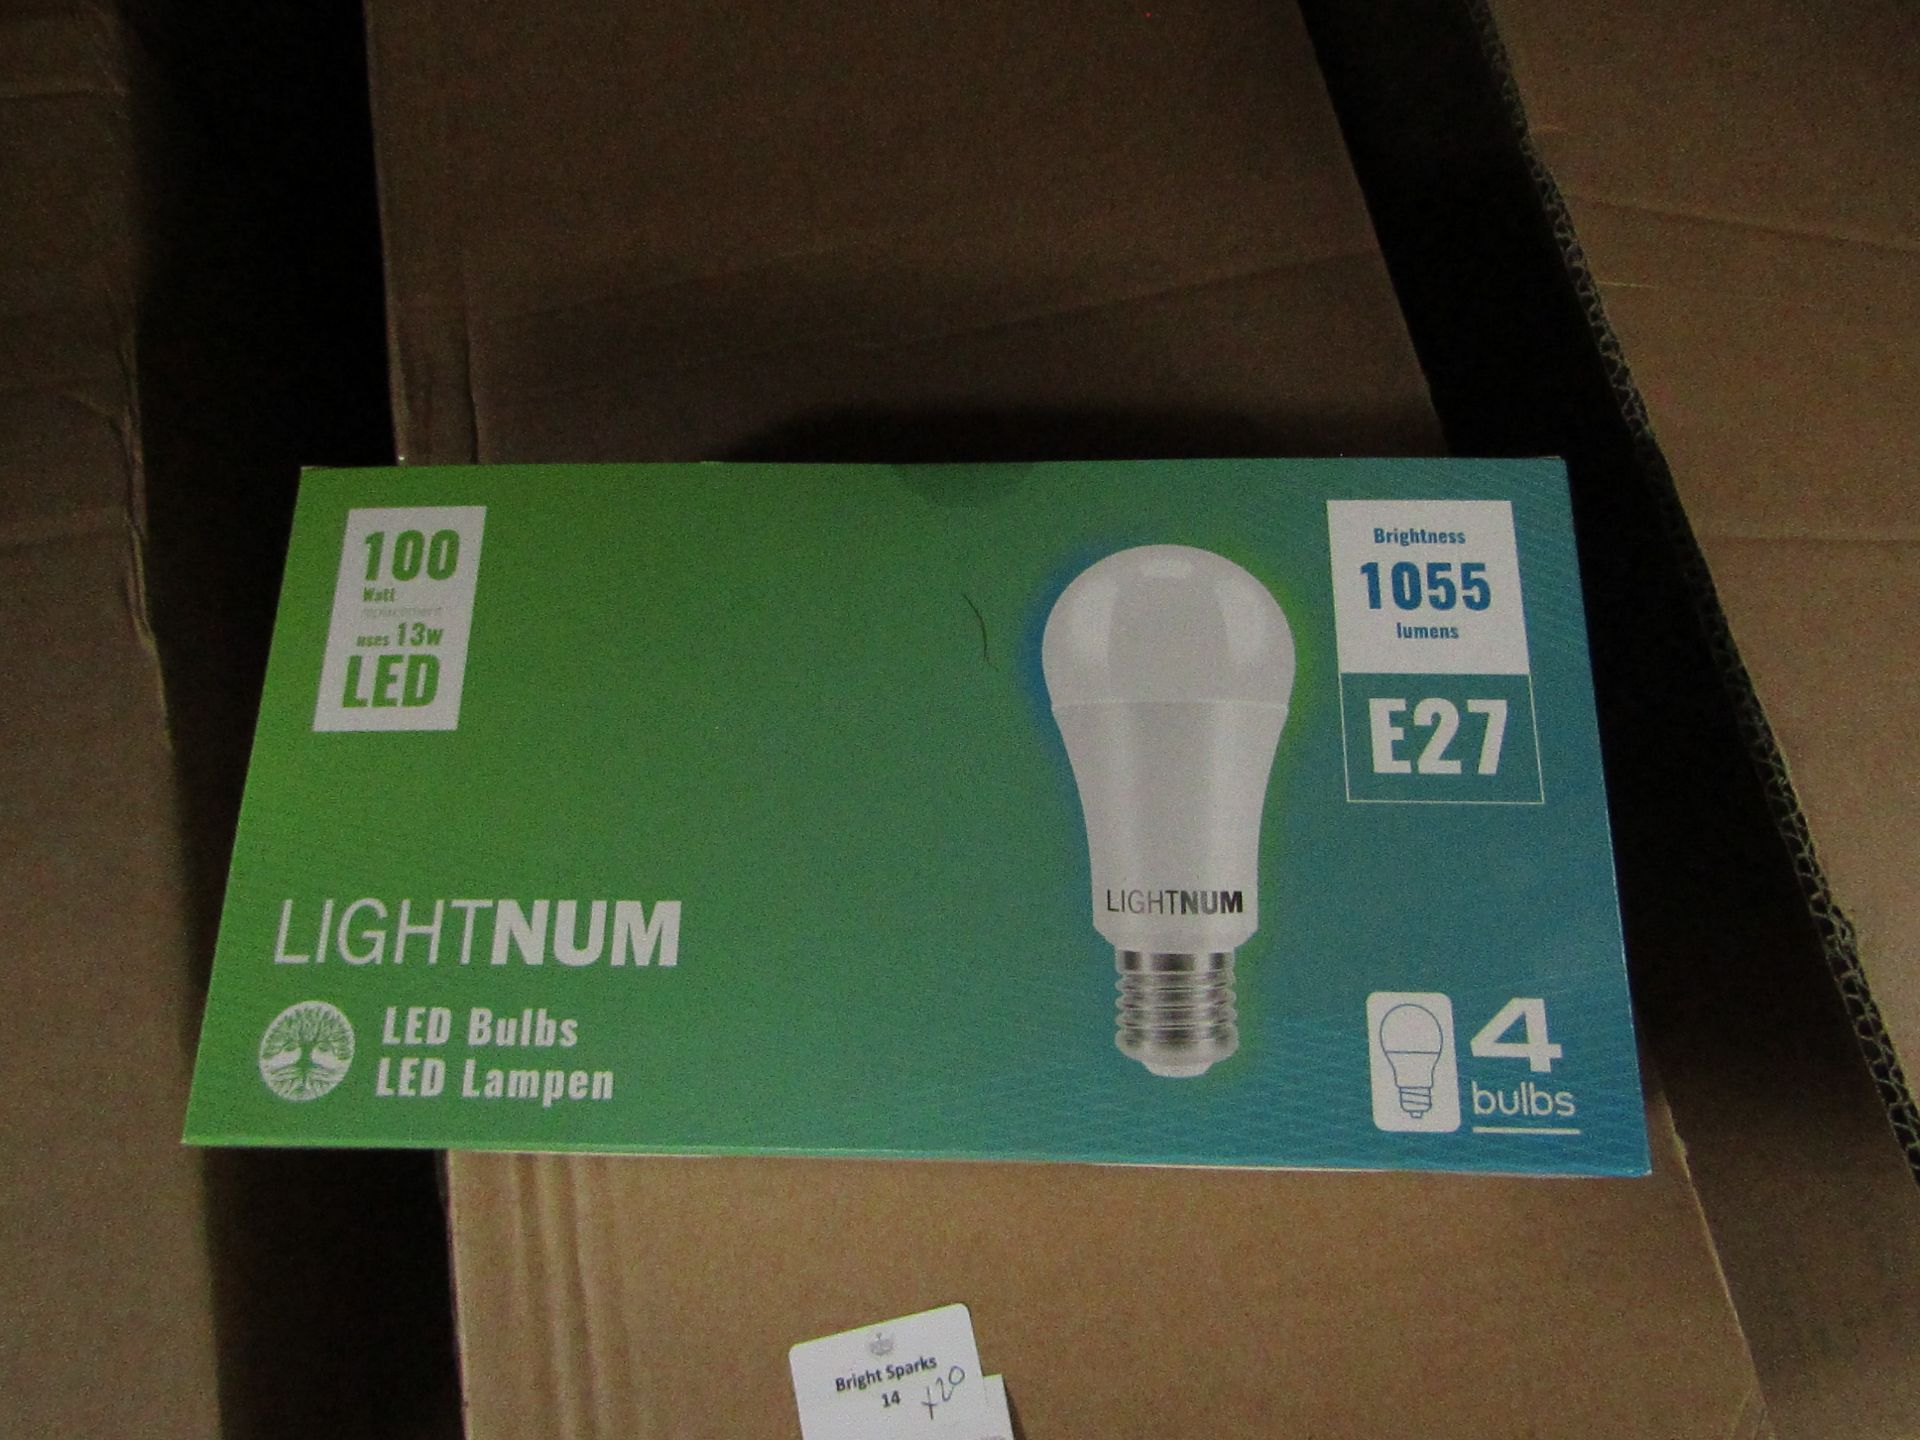 20x Packs of 4 Lightnum E27 13w LED light bulbs, new and boxed